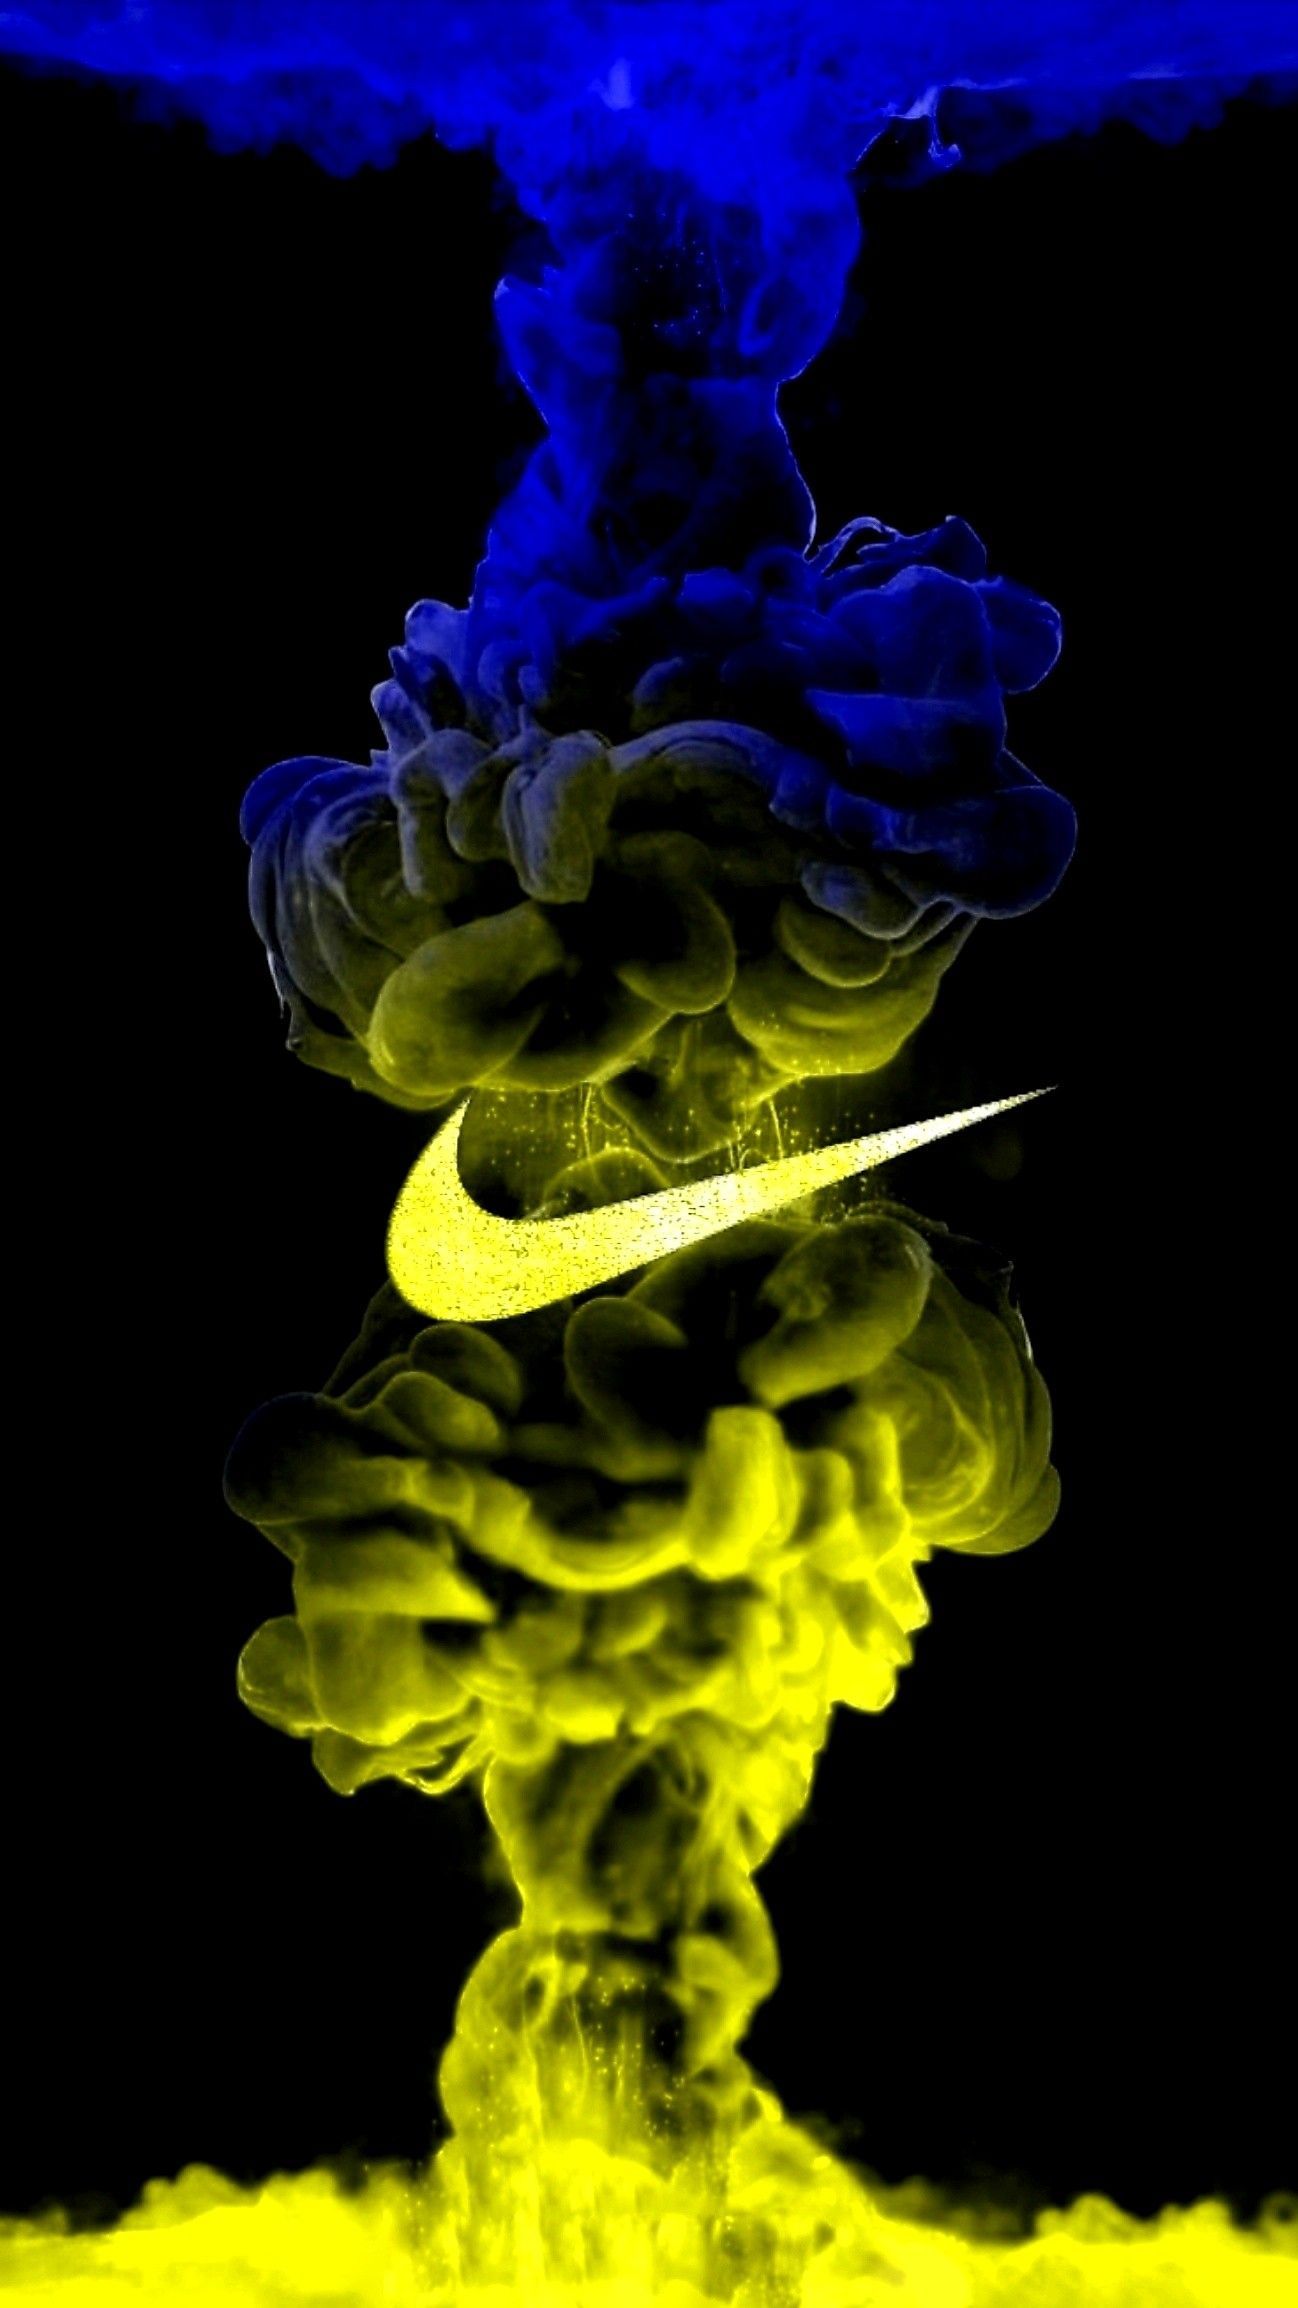 Nike wallpaper. Papel de parede reggae, Papel de parede da nike, Fotografia do fumaça